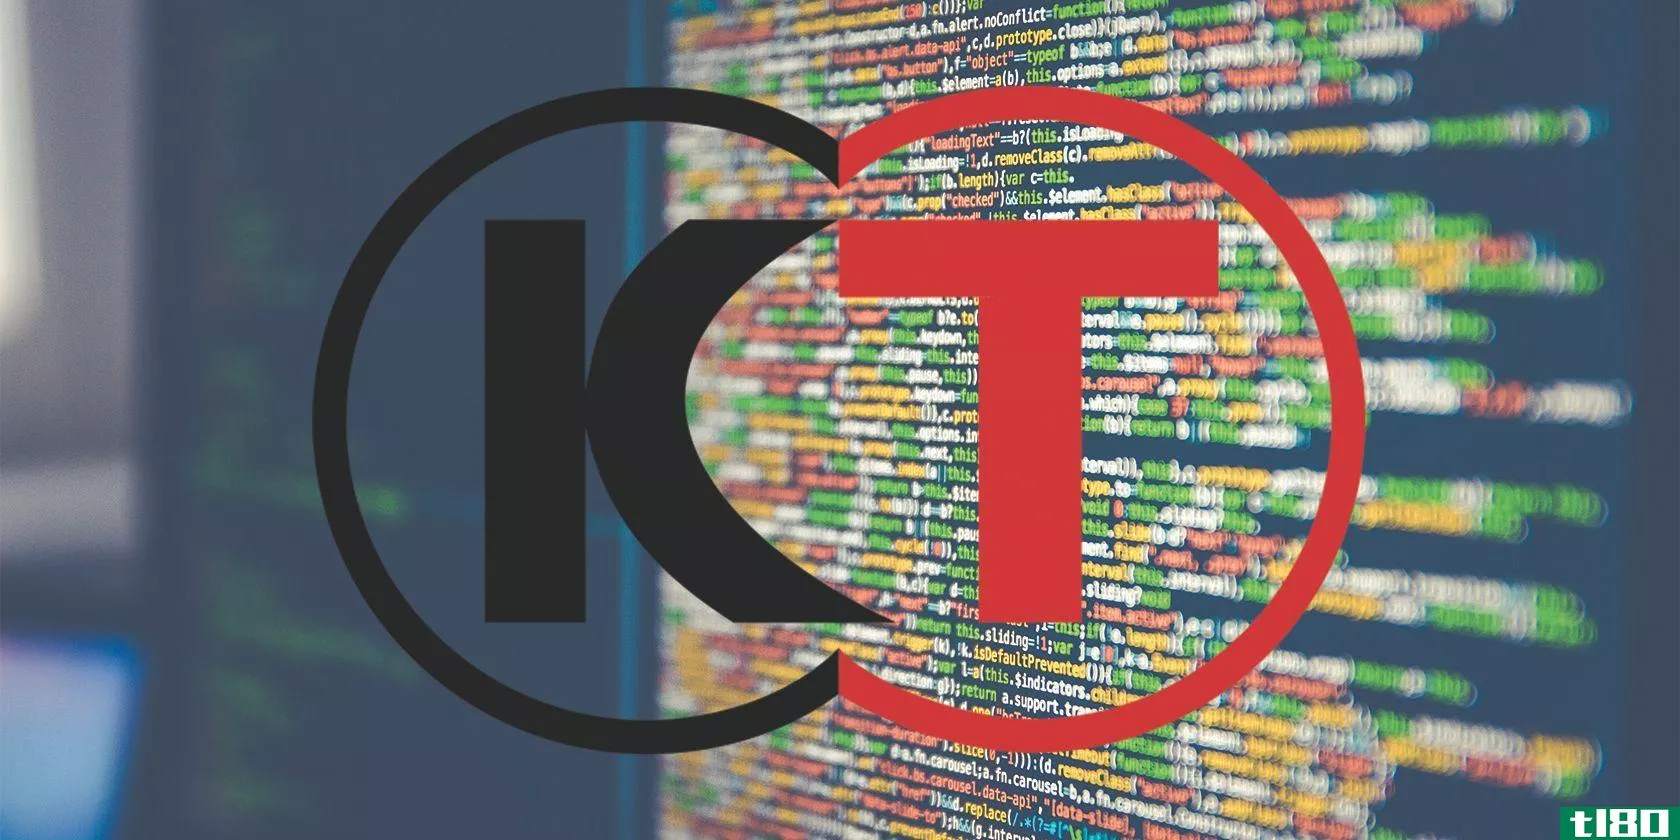 koei tecmo logo on screen with code